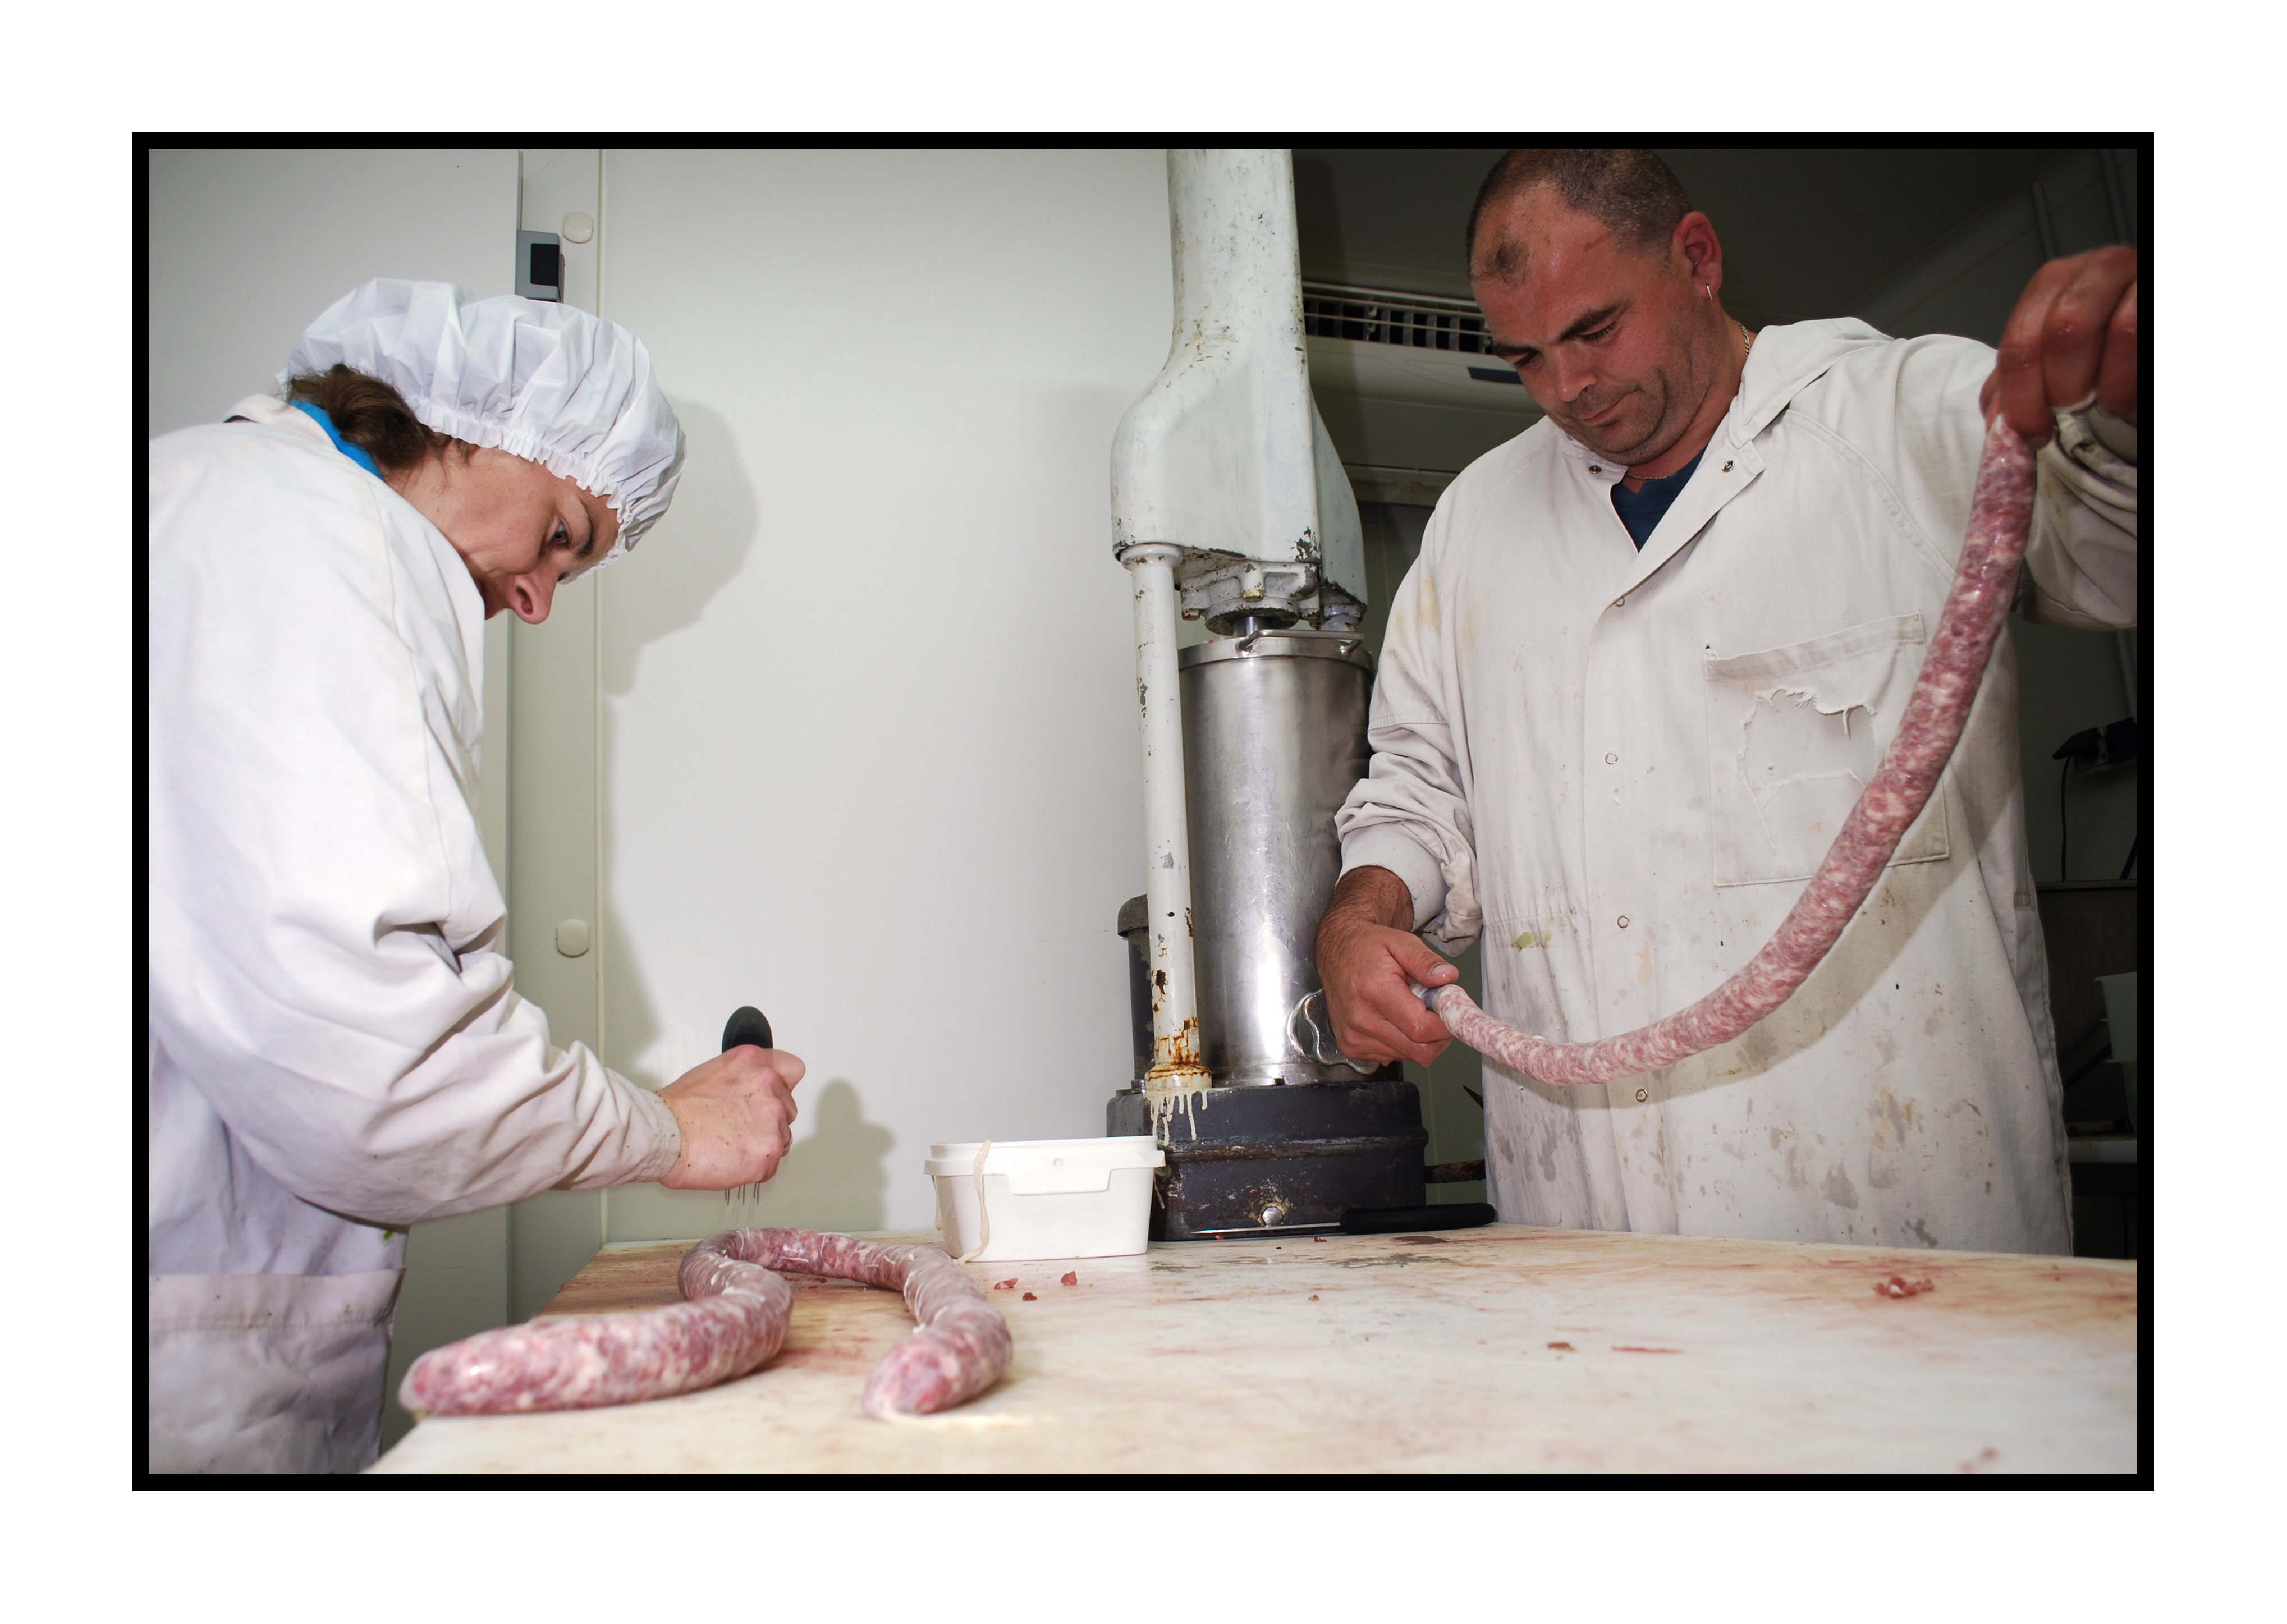 fermier-magasin de producteur-gilly sur isère-albertville- terroir-vente directe-savoie-fabrication de saucisses ferme